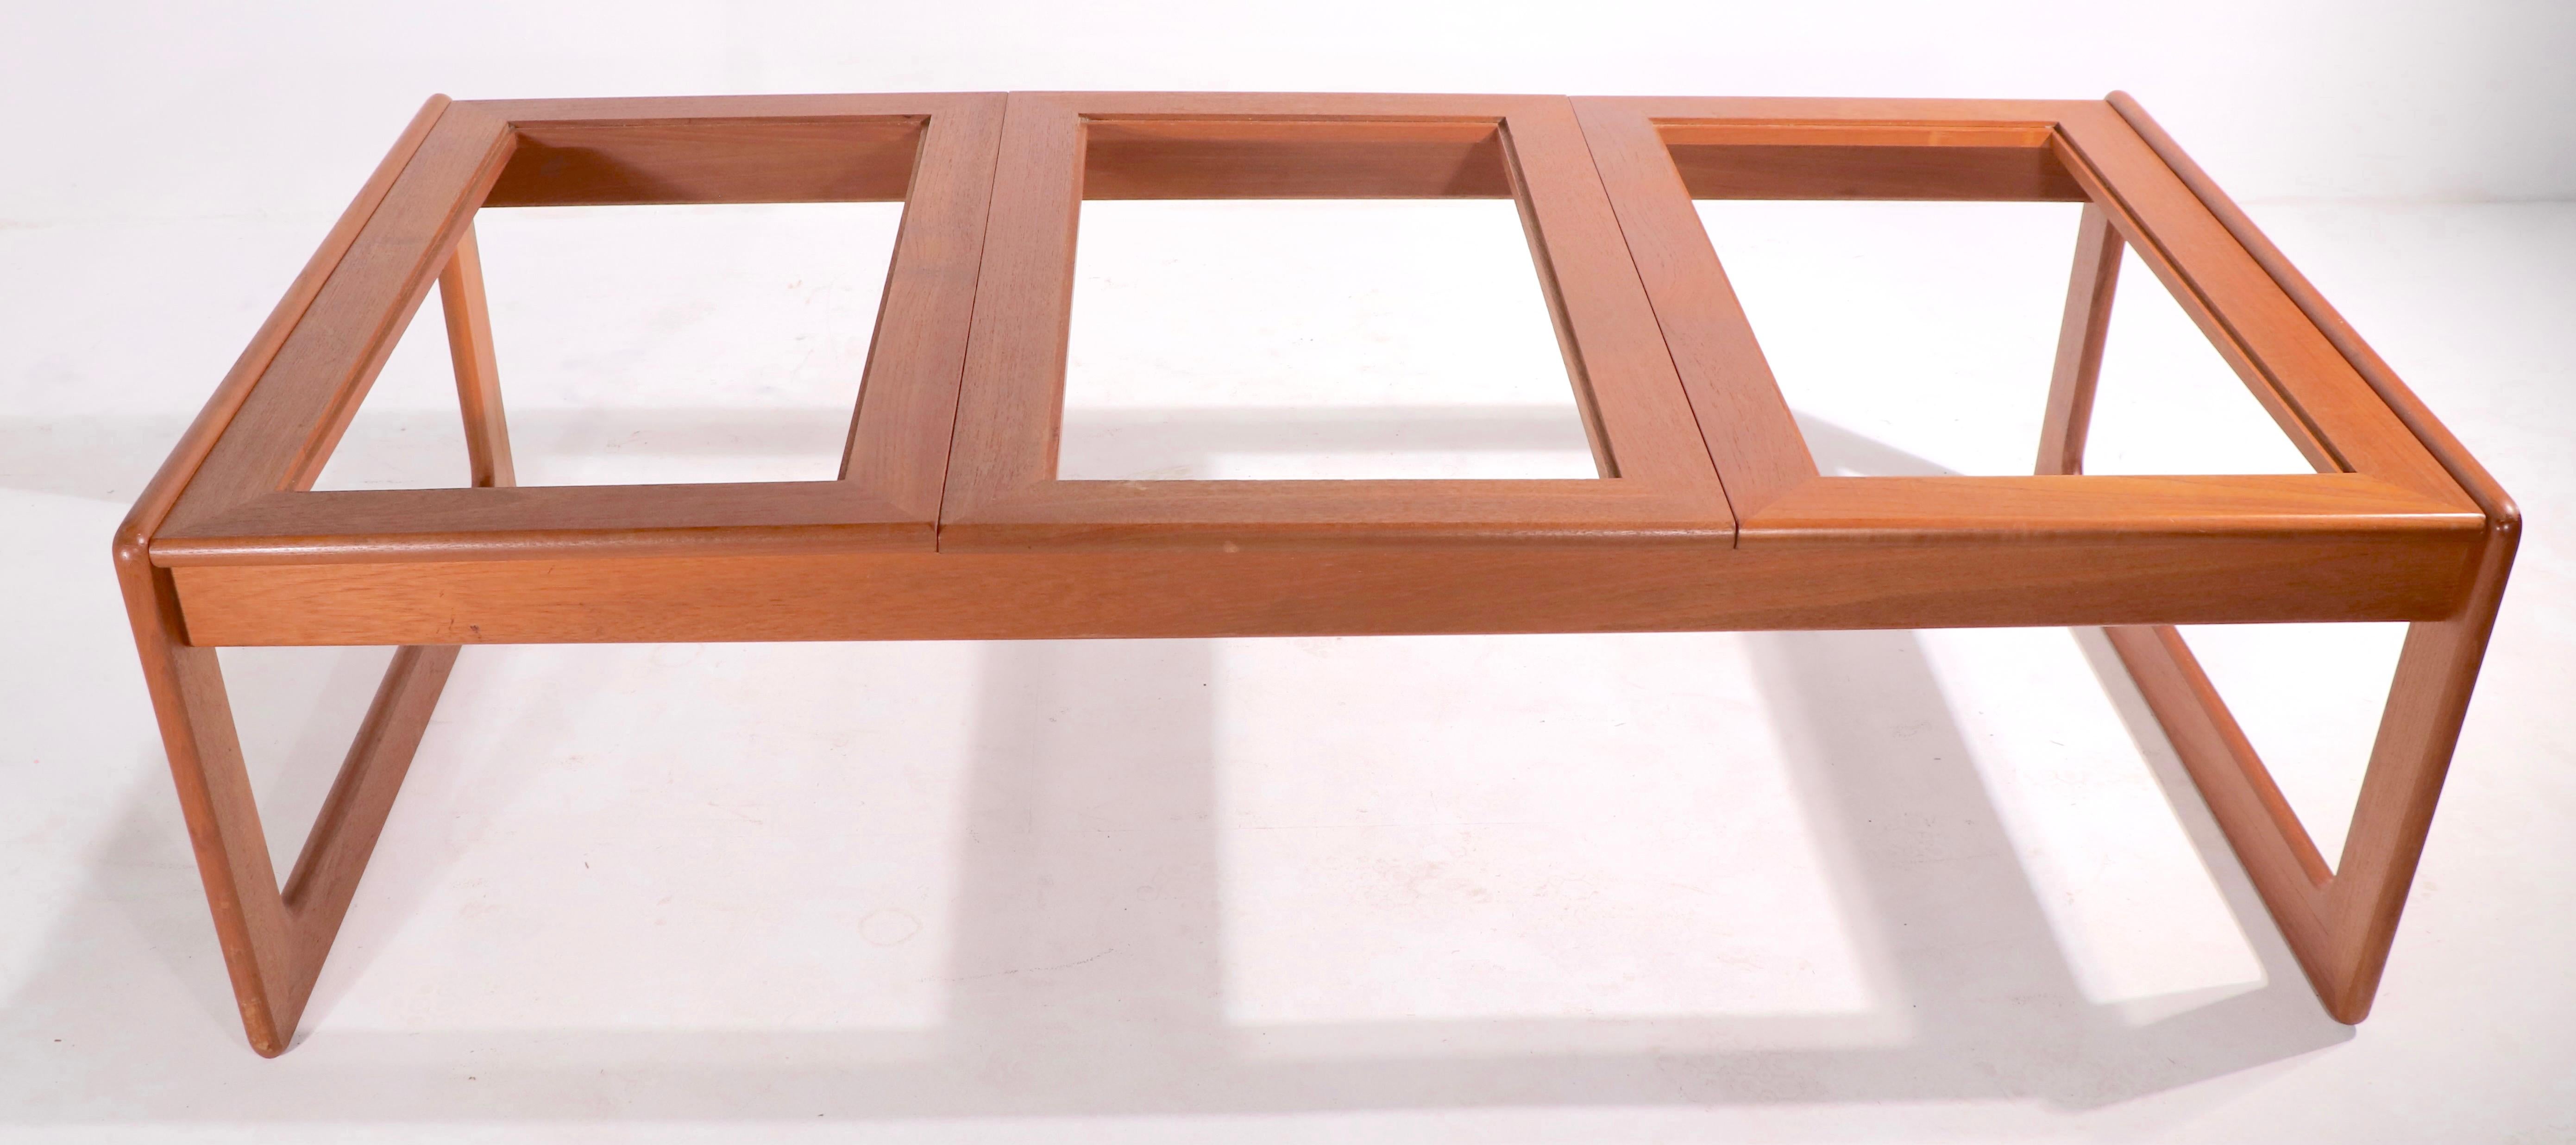 Table basse grillagée de taille inhabituelle fabriquée au Danemark par Komfort. Cet exemple a un cadre en teck massif, avec trois panneaux en verre teinté insérés dans la partie supérieure. La plupart des tables basses à grille Kormfort n'ont que